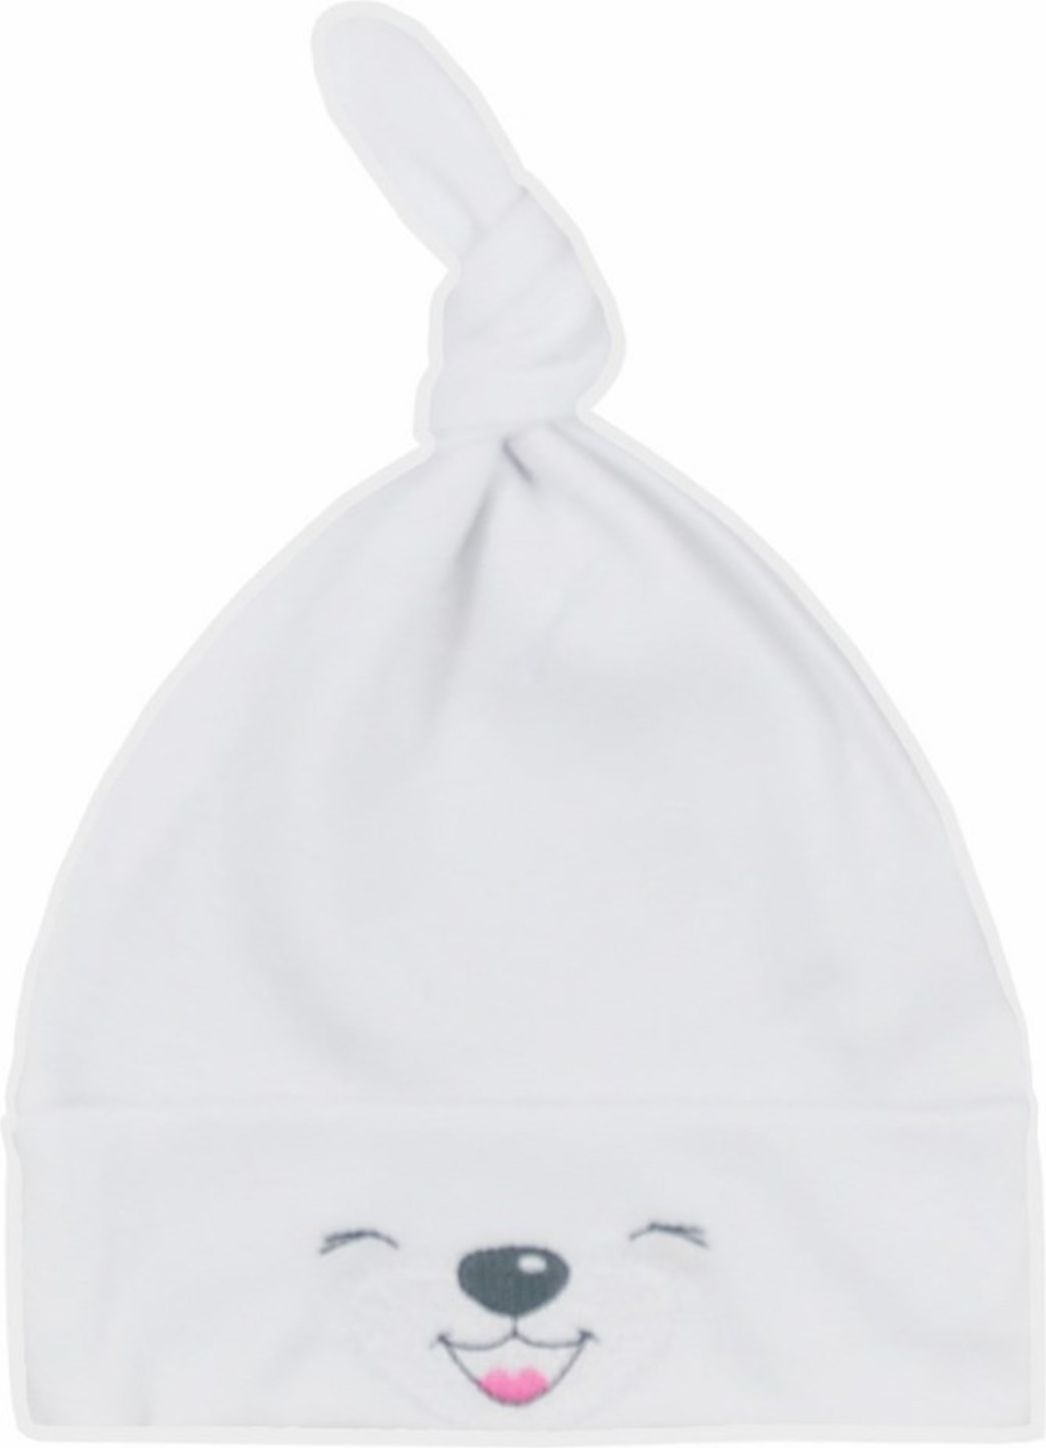 Bavlněná kojenecká čepička Bobas Fashion Lucky bílá - Bavlněná kojenecká čepička Bobas Fashion Lucky bílá - obrázek 1